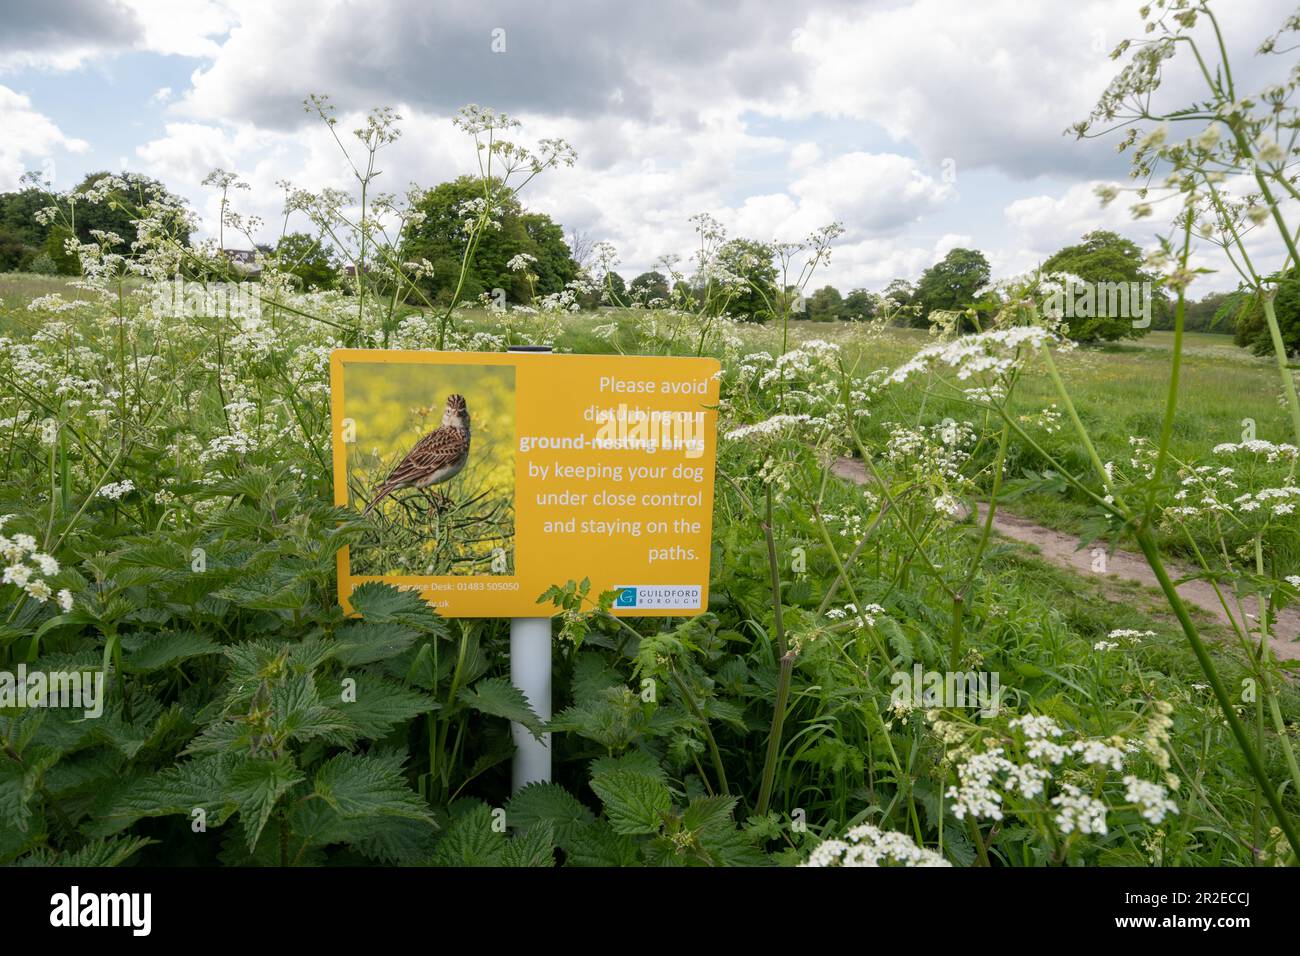 Accedi all'area delle praterie pubbliche - evita di disturbare gli uccelli nidificanti mantenendo i cani sotto stretto controllo e rimanendo su Paths, Inghilterra, Regno Unito Foto Stock